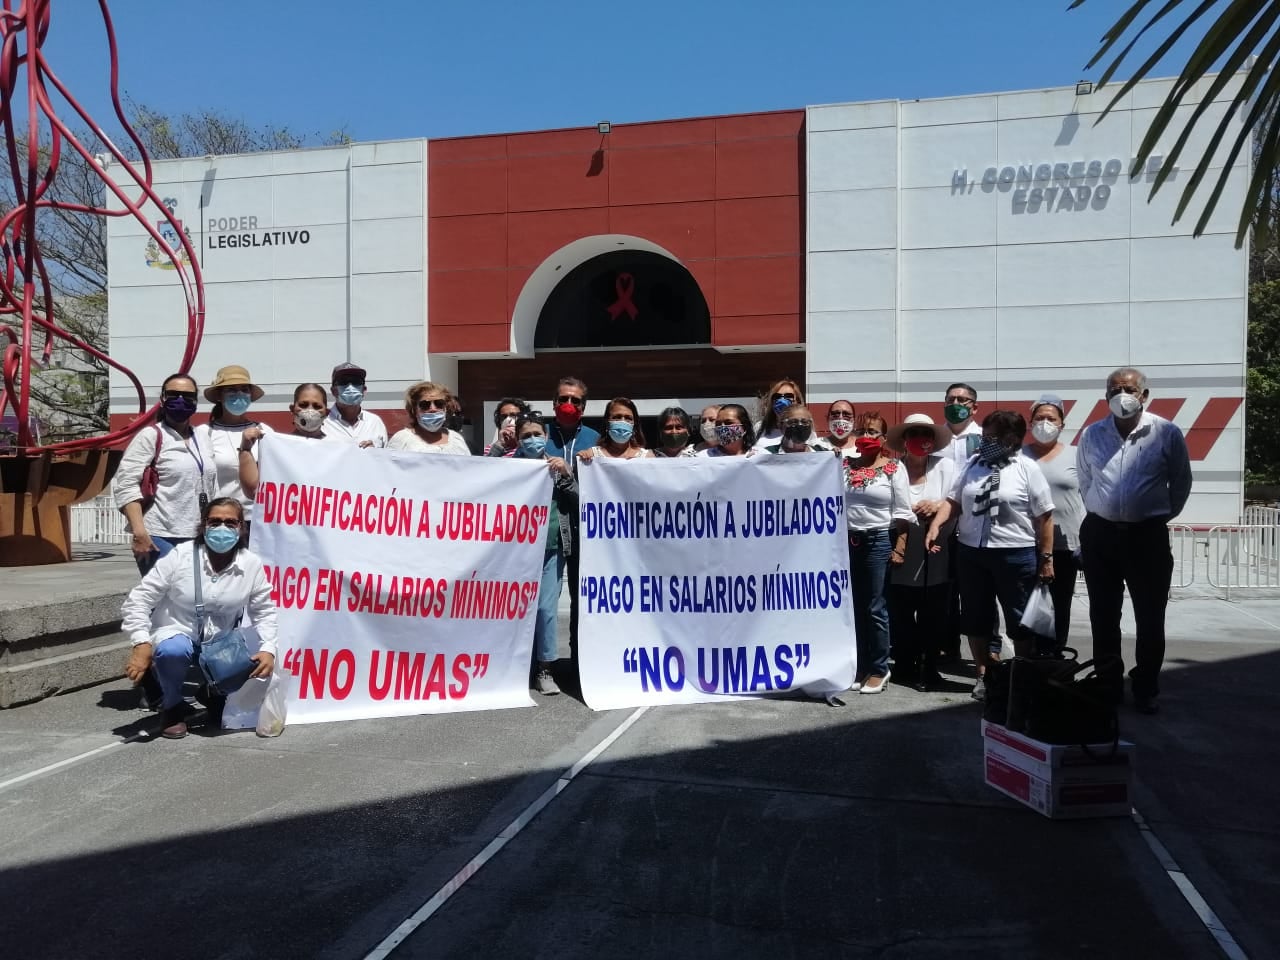 Diversificarán jubilados lucha para lograr pago de pensiones en salarios mínimos (Colima)